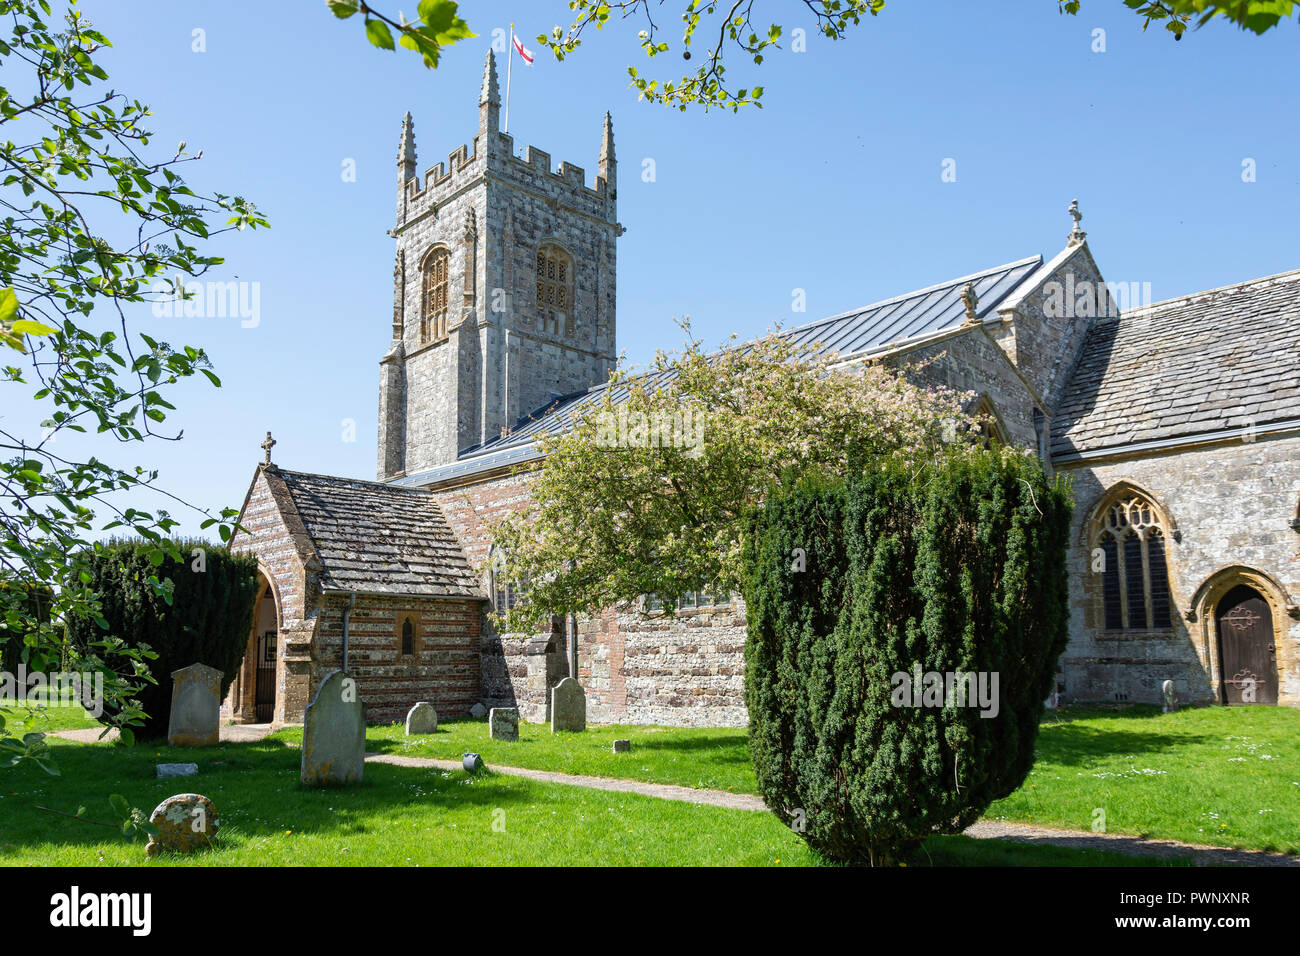 St John the Baptist Church, Southbrook, Bere Regis, dans le Dorset, Angleterre, Royaume-Uni Banque D'Images